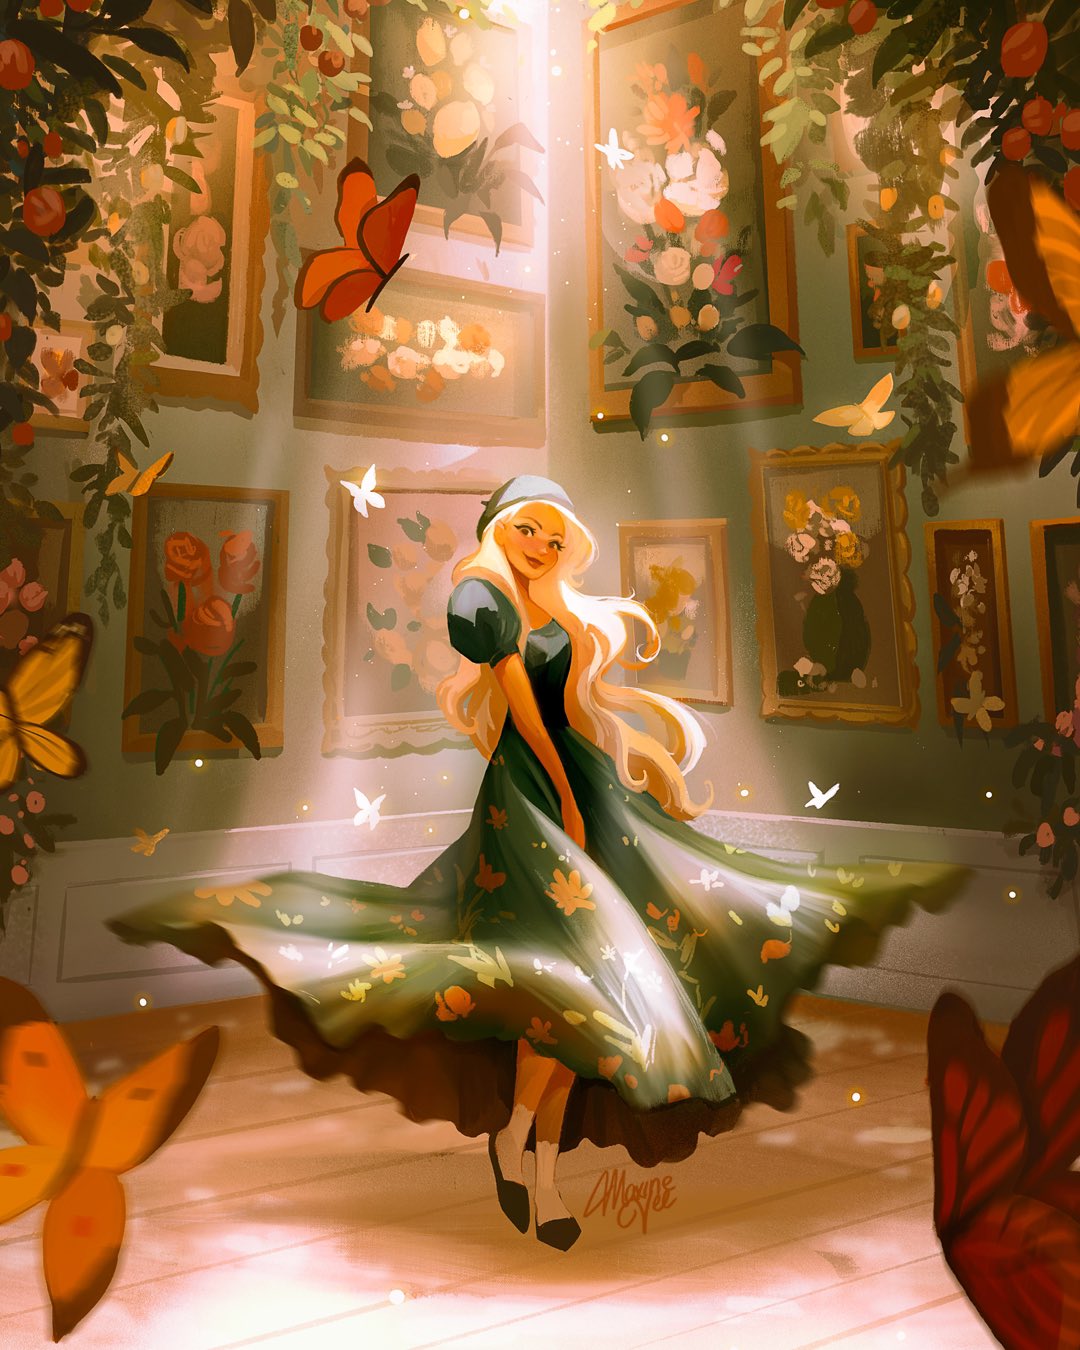 Фото Белокурая девушка в шляпке и развевающемся платье стоит в комнате с картинами на стенах в окружении бабочек